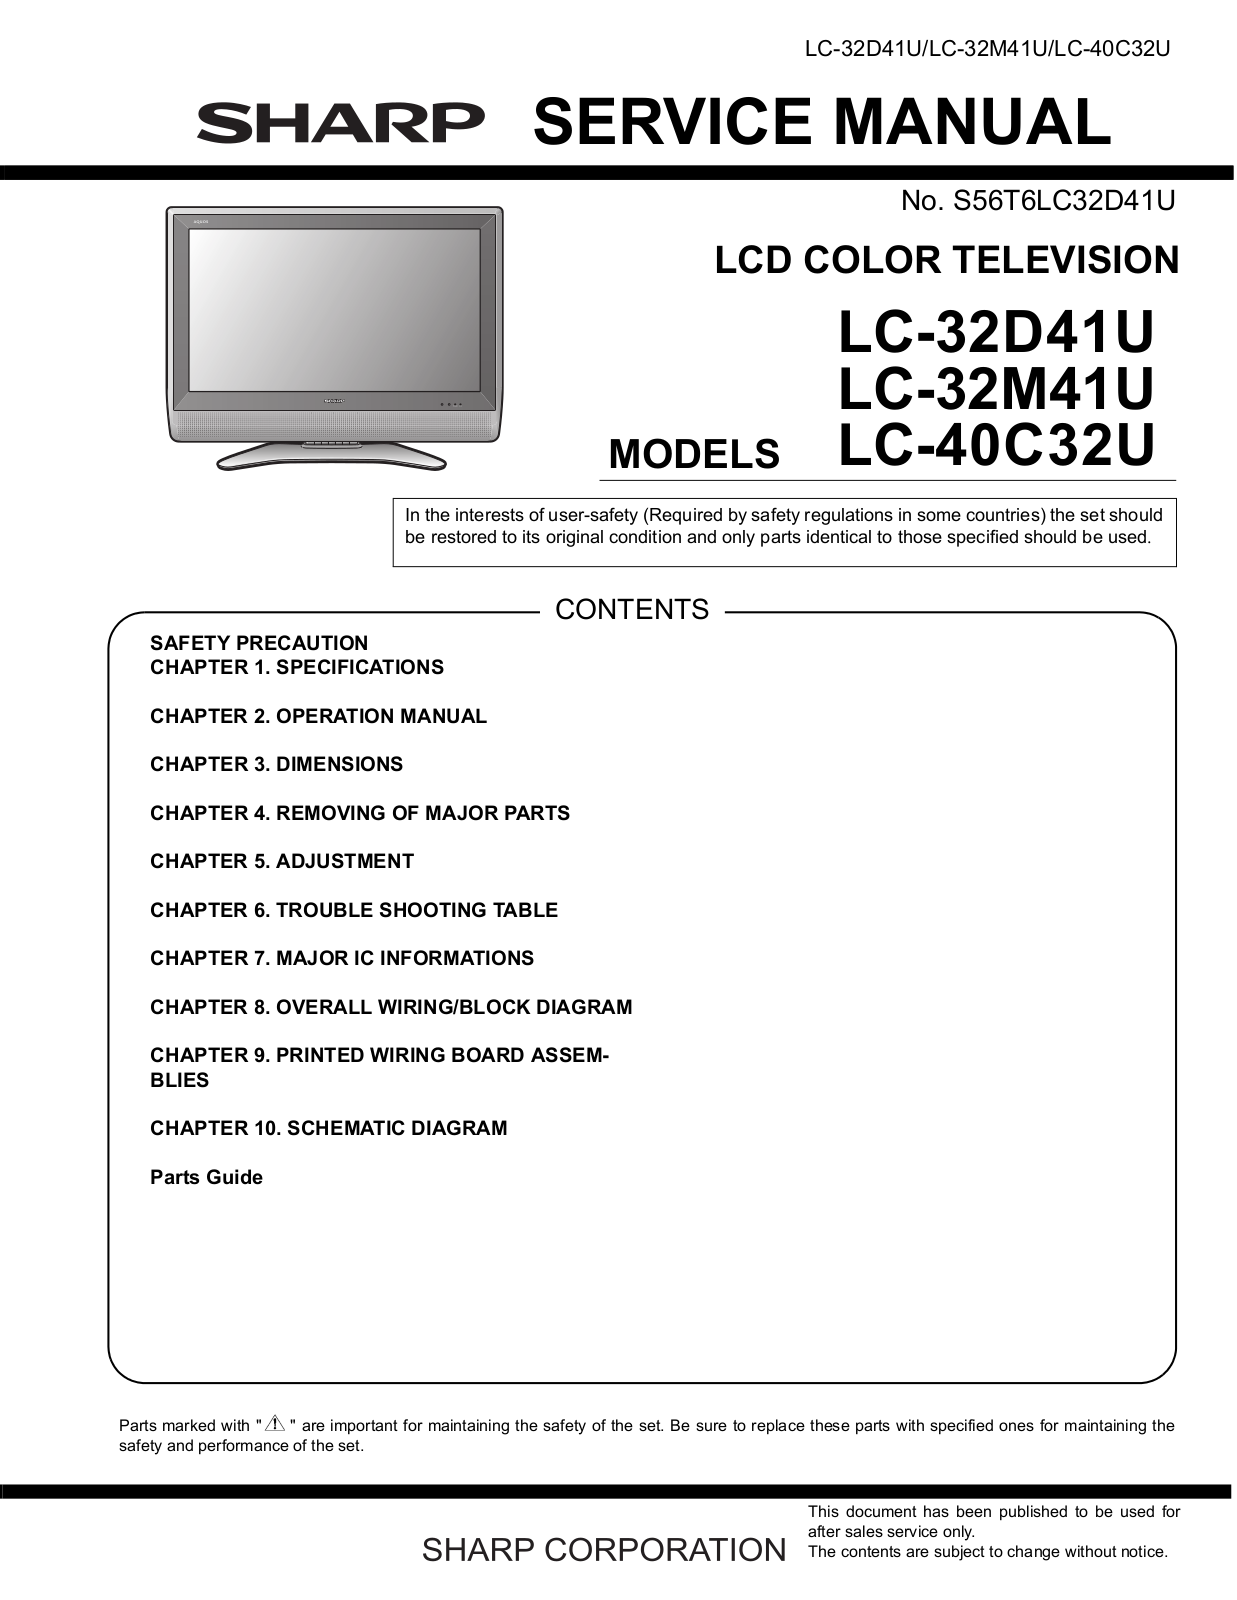 Sharp LC-40C32U, LC-32M41U, LC-32D41U User Manual